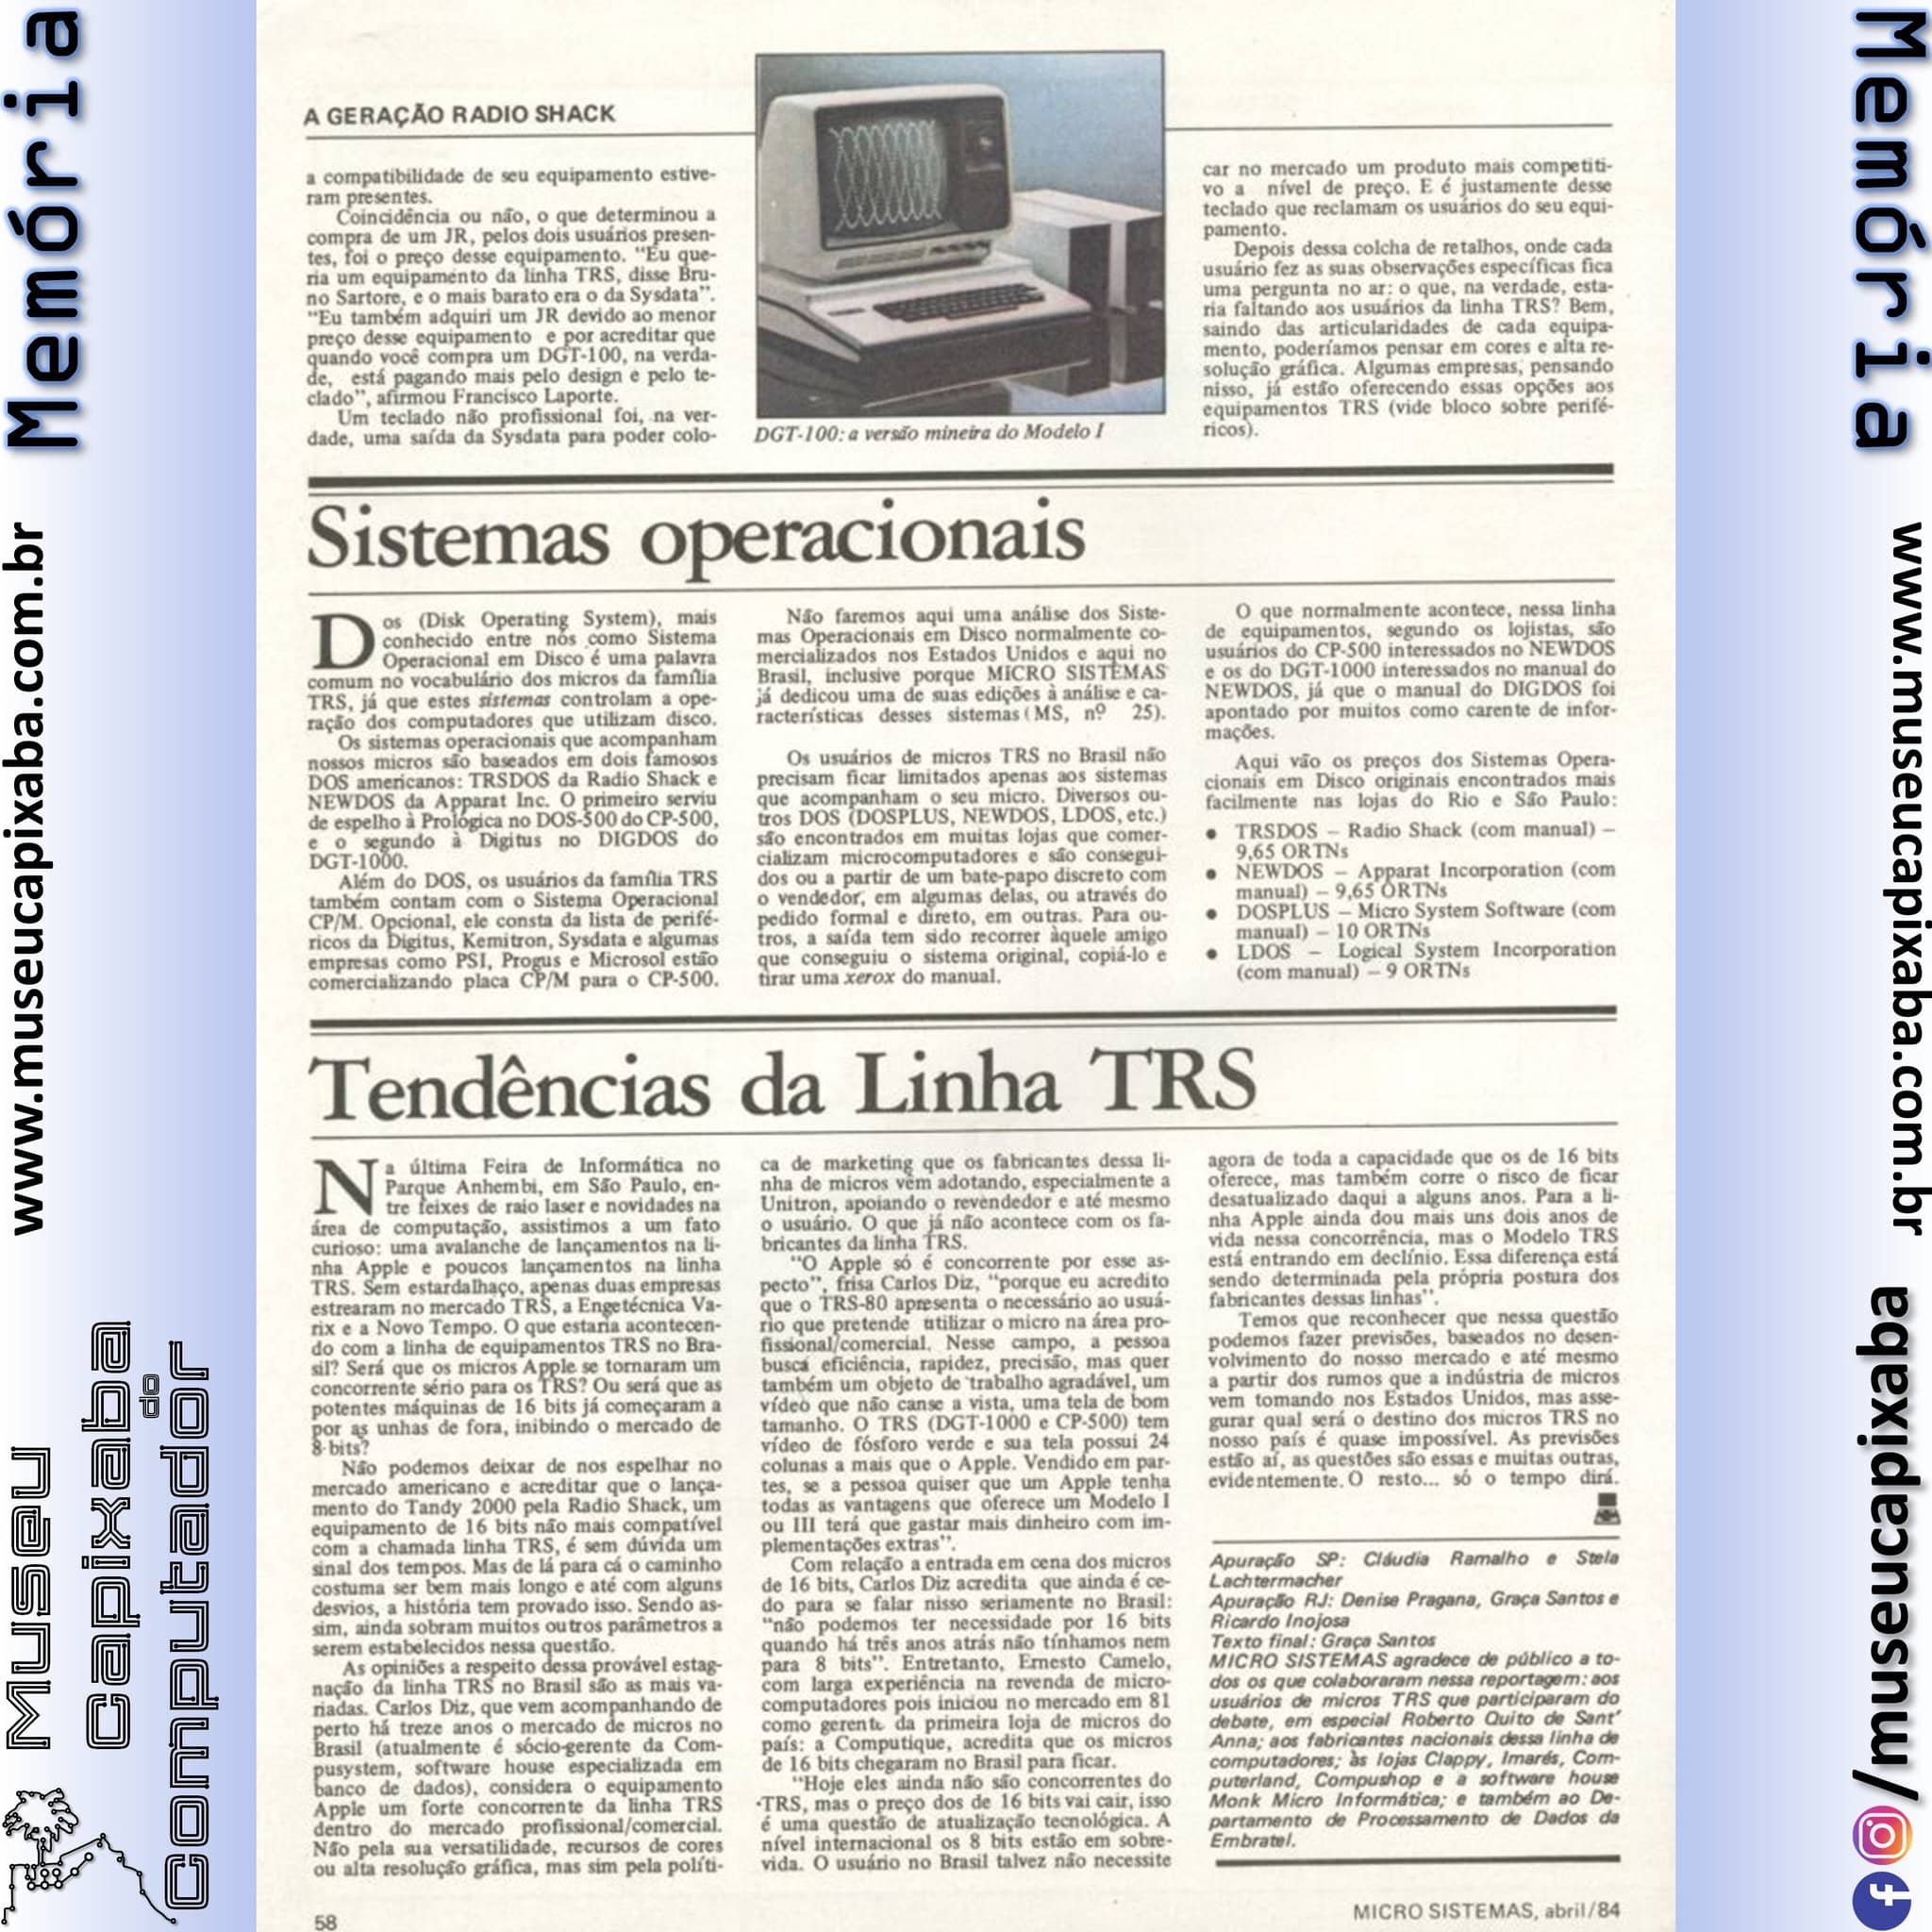 A geração Radio Shack Revista Microsistemas abr 1984 8